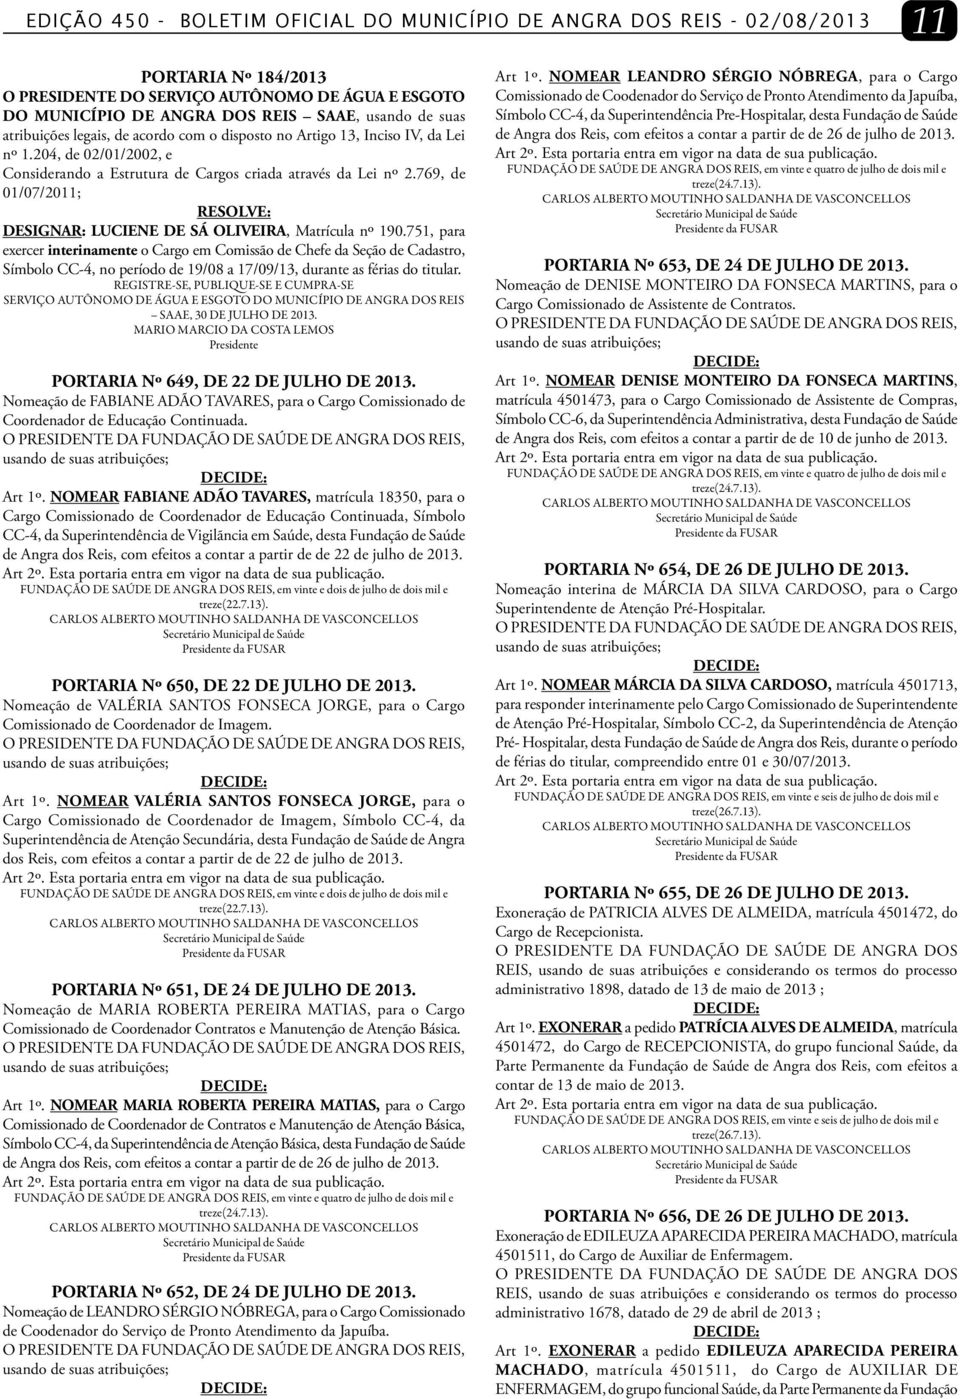 769, de 01/07/2011; DESIGNAR: LUCIENE DE SÁ OLIVEIRA, Matrícula nº 190.